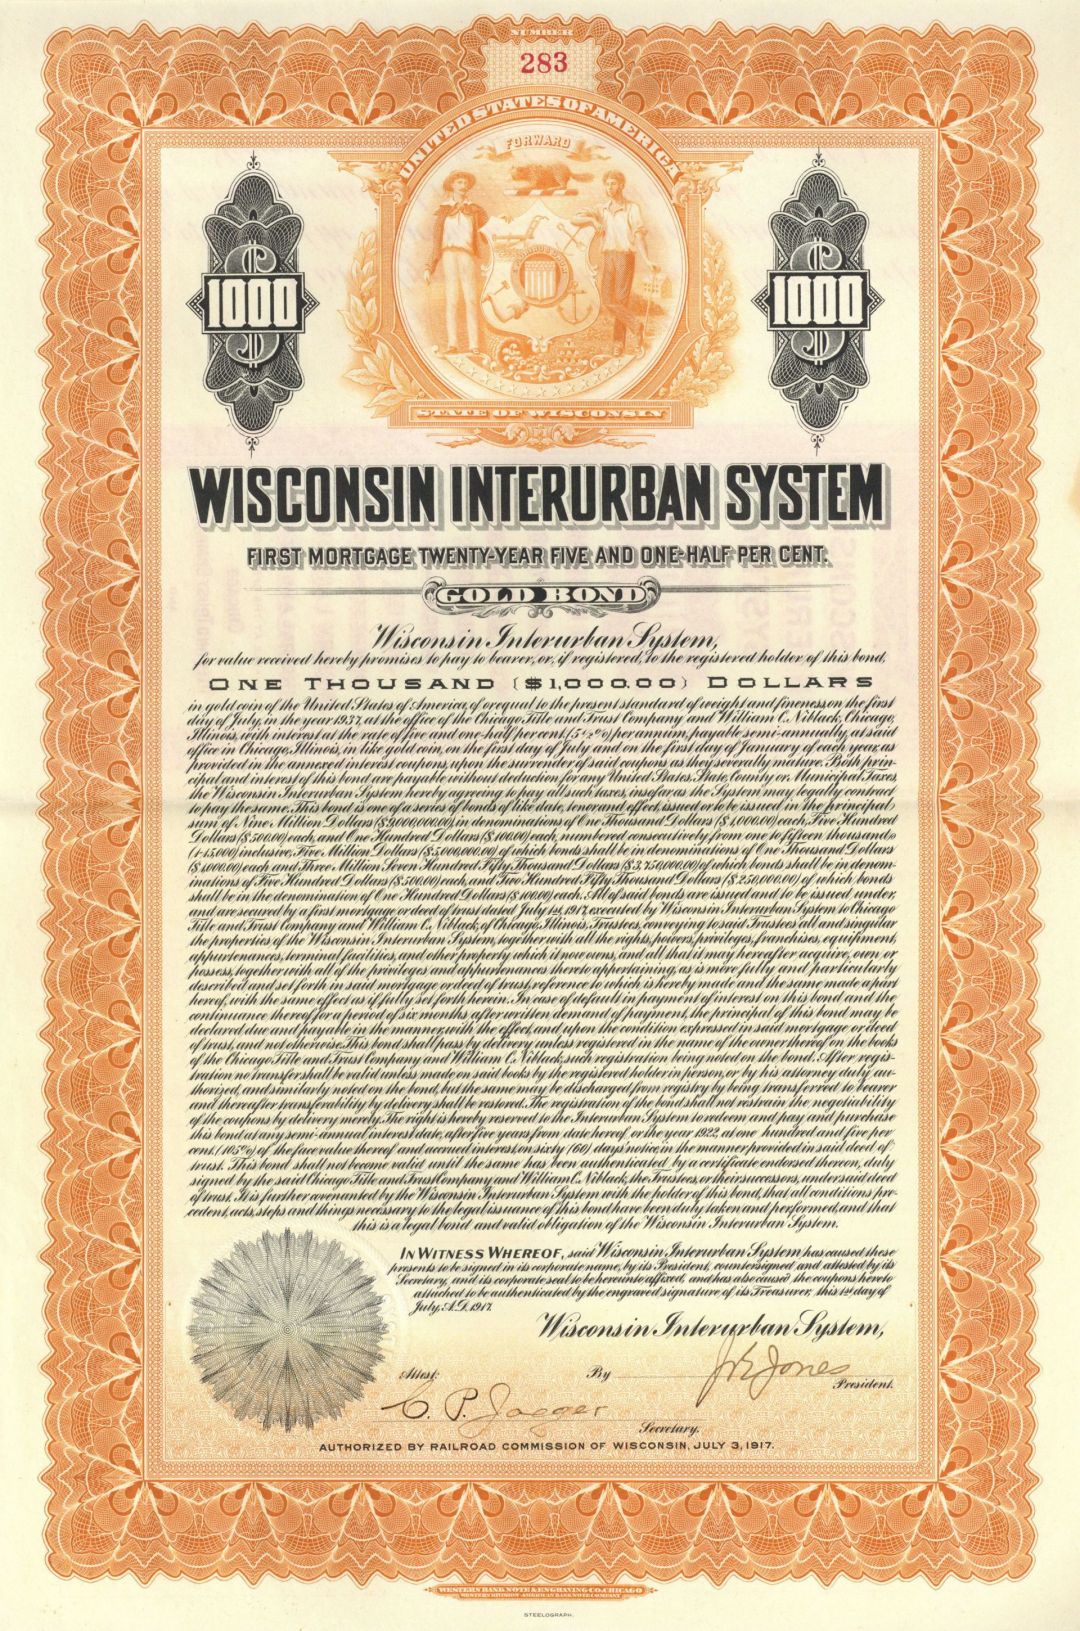 Wisconsin Interurban System - $1,000 5.5% Gold Bond (Uncanceled)